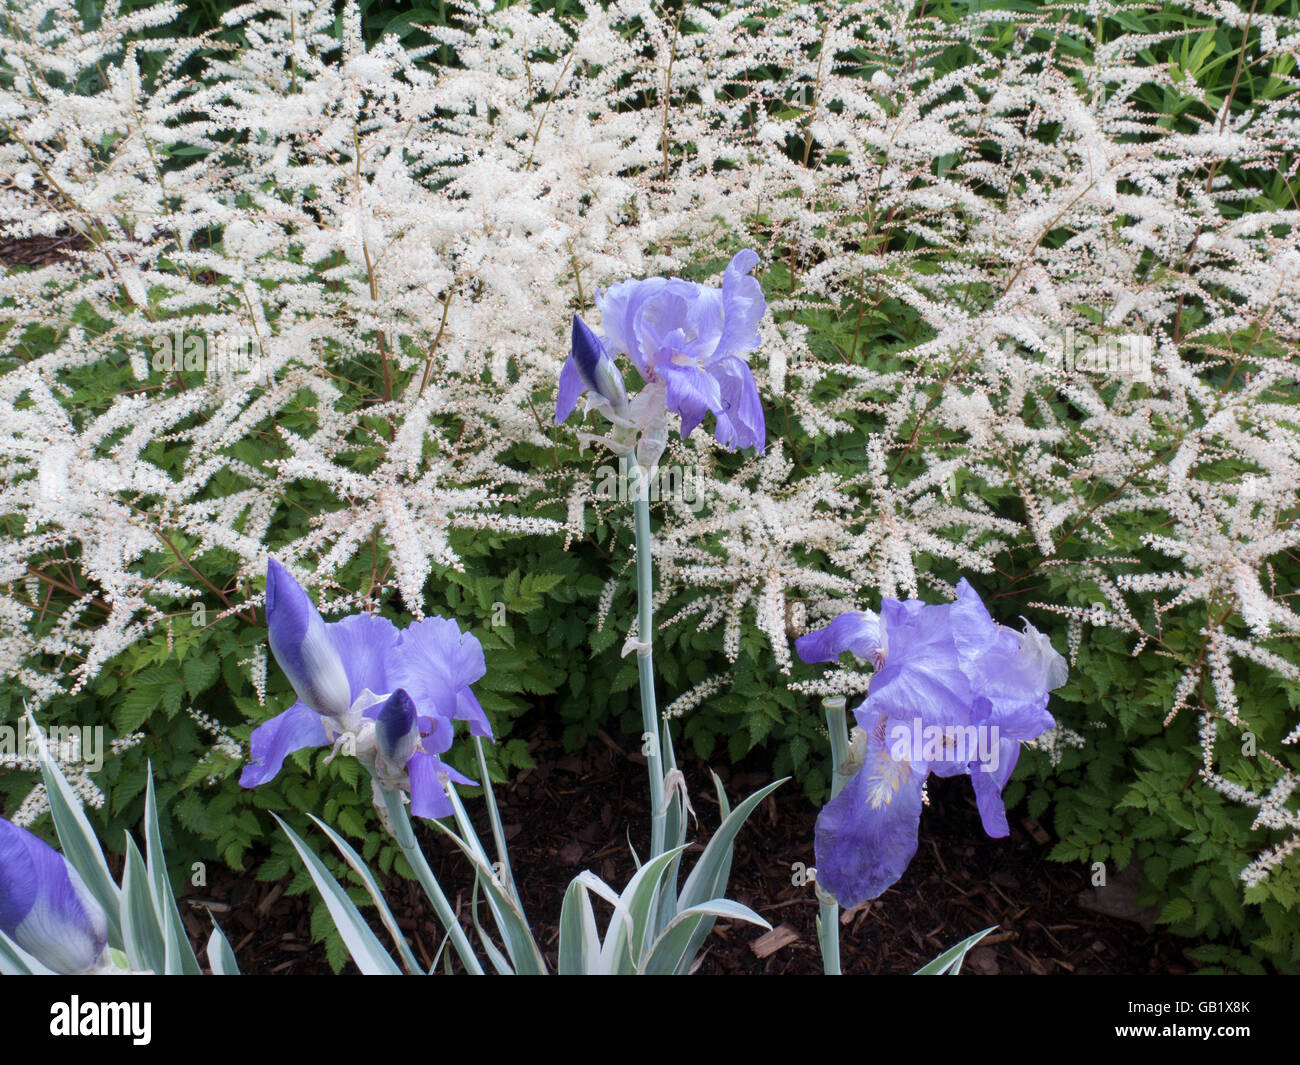 Astilbe bianco e blu iris barbuto fare una bella combinazione in questo giardino di primavera. Foto Stock